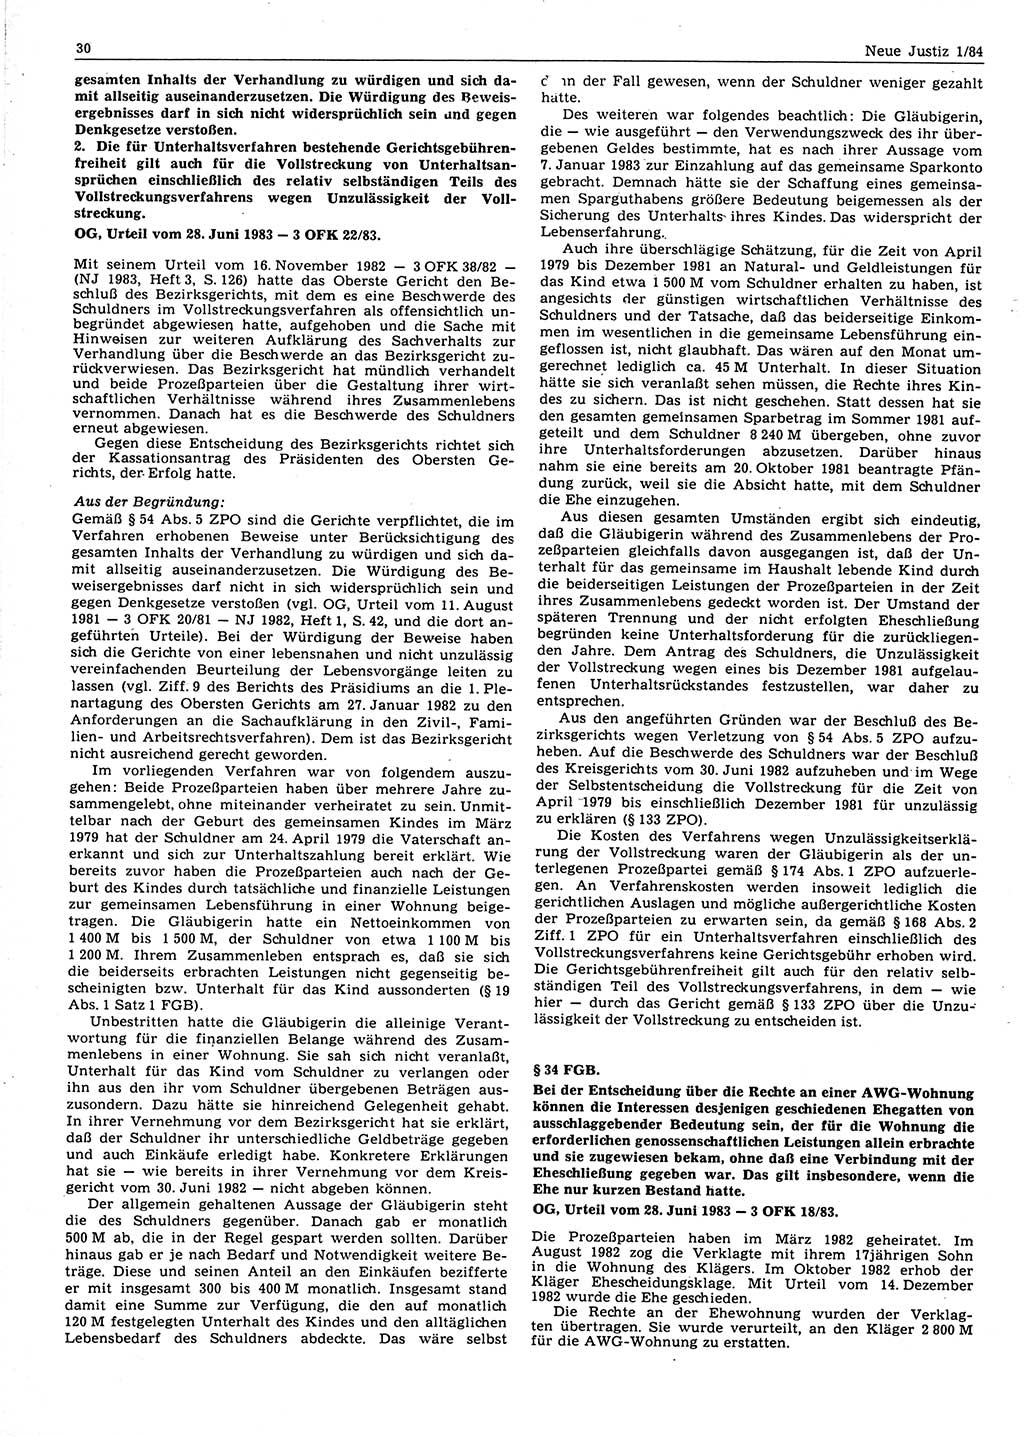 Neue Justiz (NJ), Zeitschrift für sozialistisches Recht und Gesetzlichkeit [Deutsche Demokratische Republik (DDR)], 38. Jahrgang 1984, Seite 30 (NJ DDR 1984, S. 30)